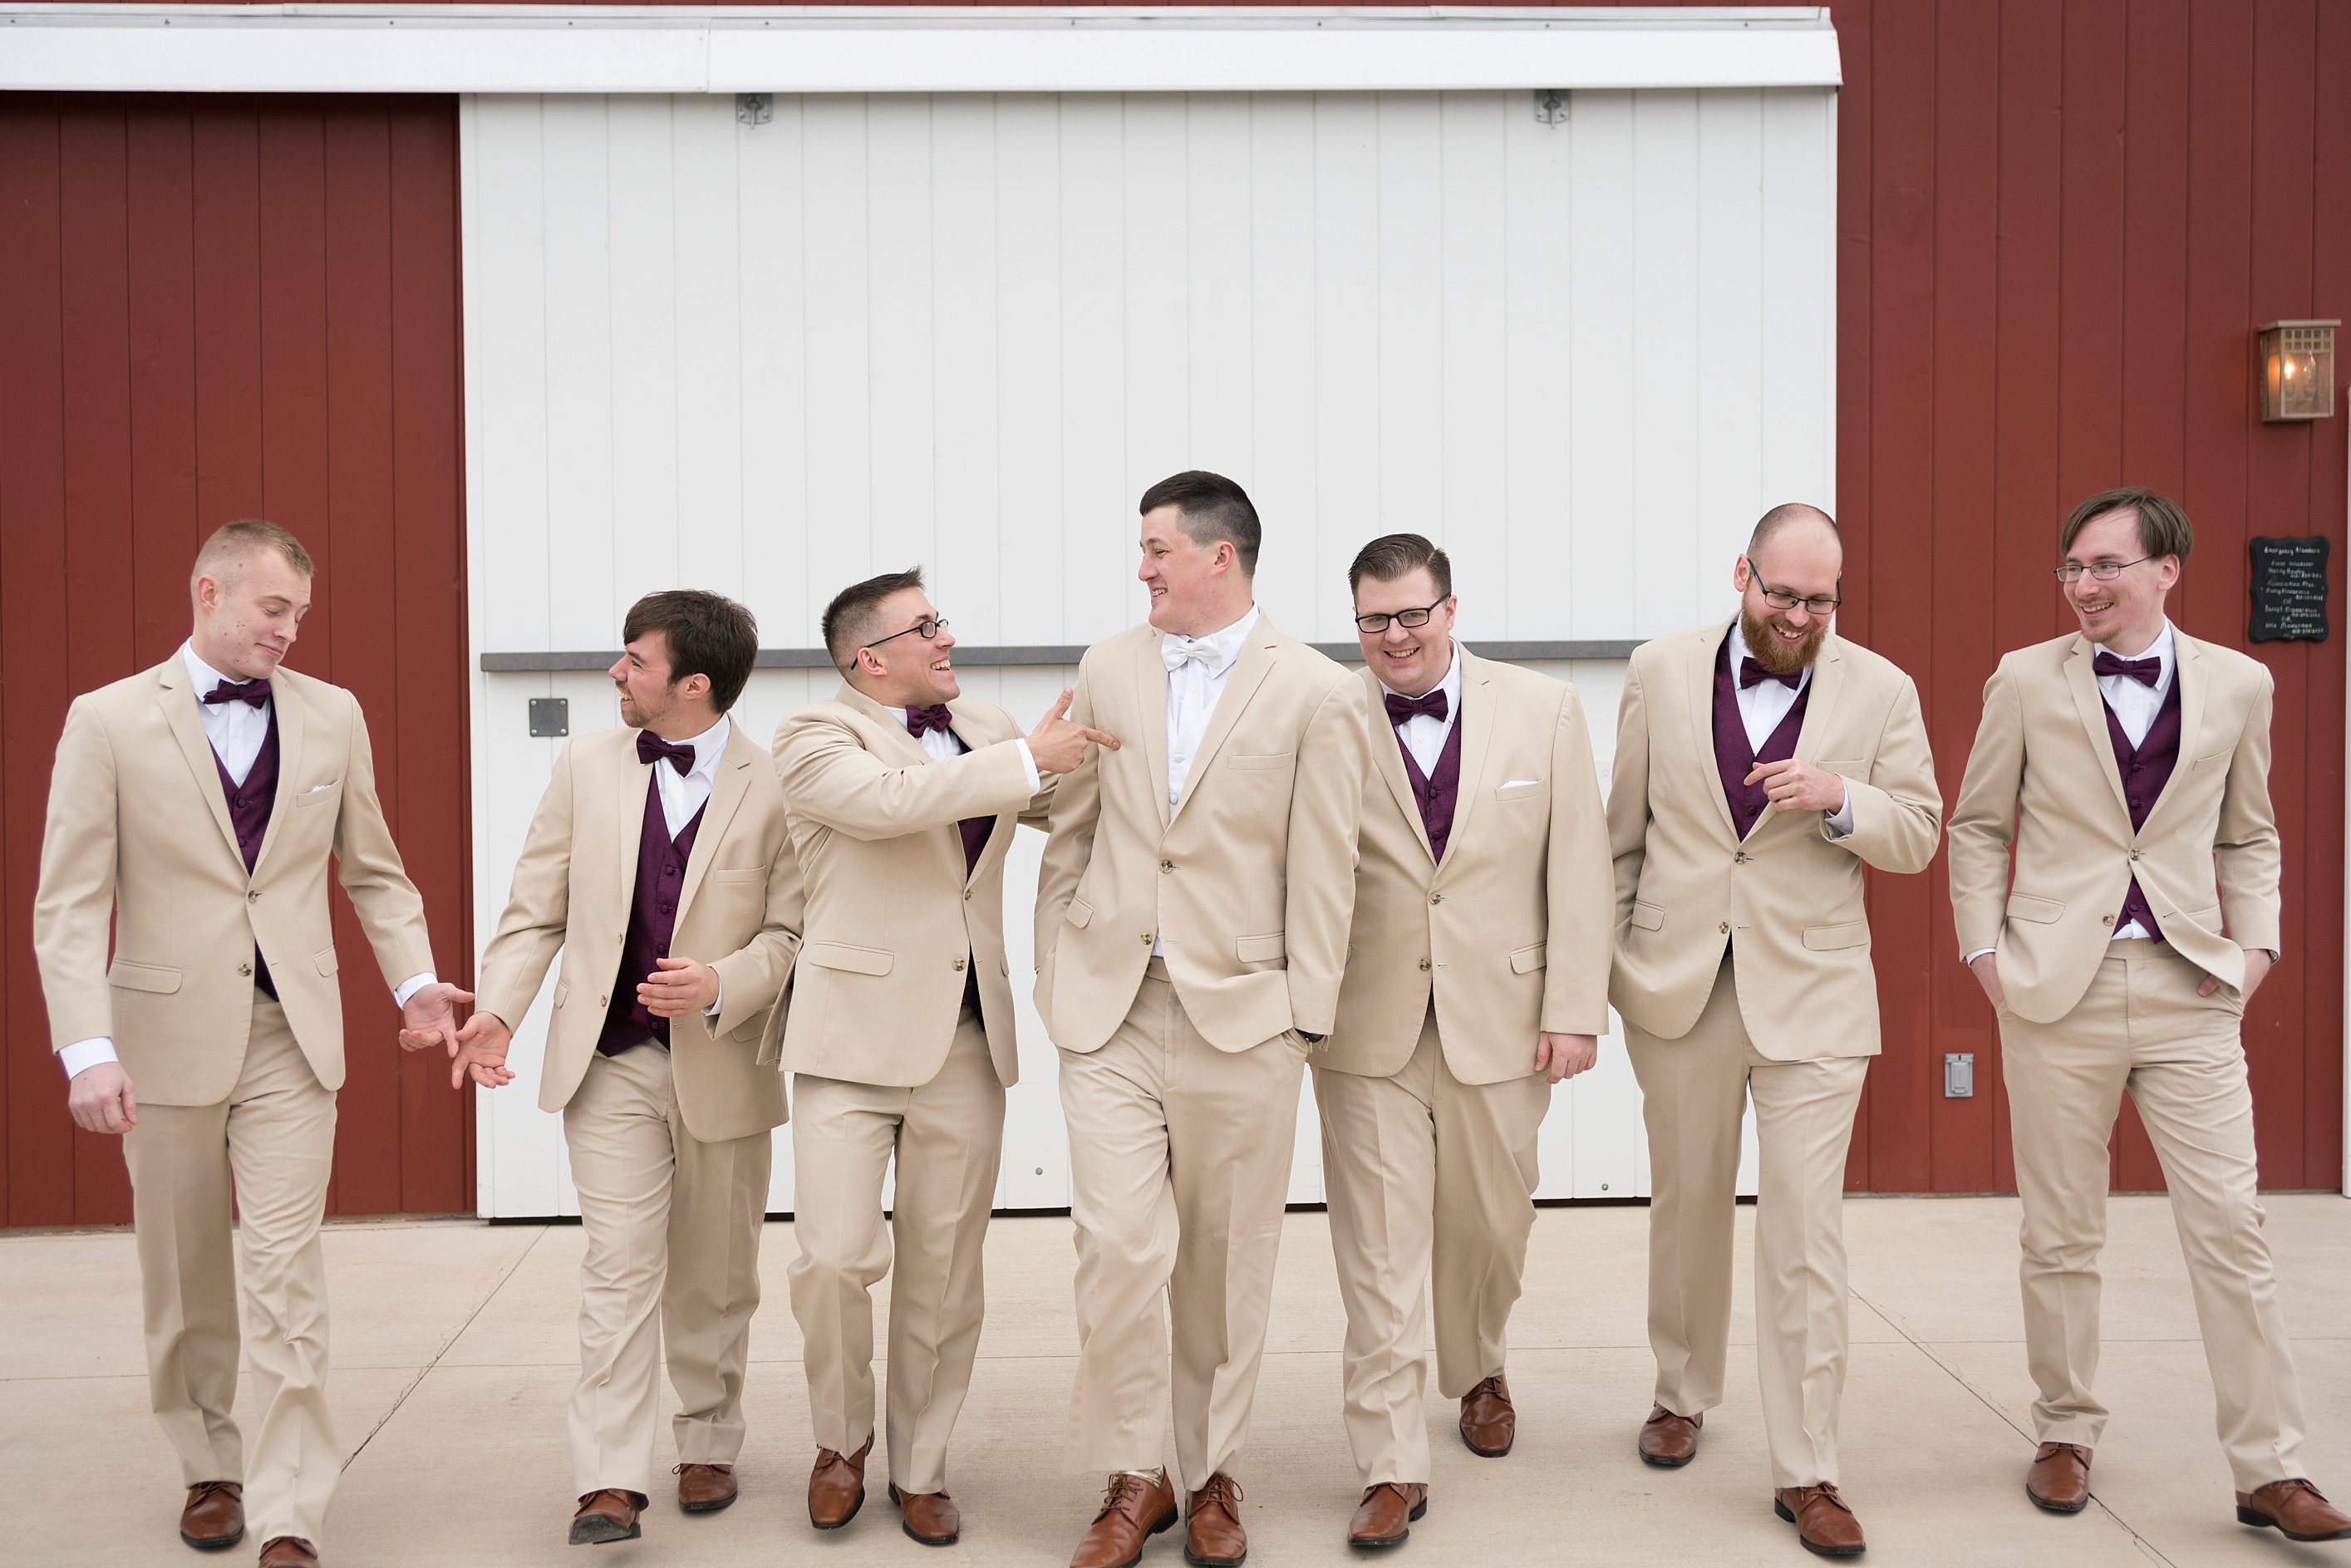 Groomsmen Photos. Wedding-Party-Photos-The-Barn-at-Kill-Creek-Wedding-Photos-De-Soto-KS-Emily-Lynn-Photography